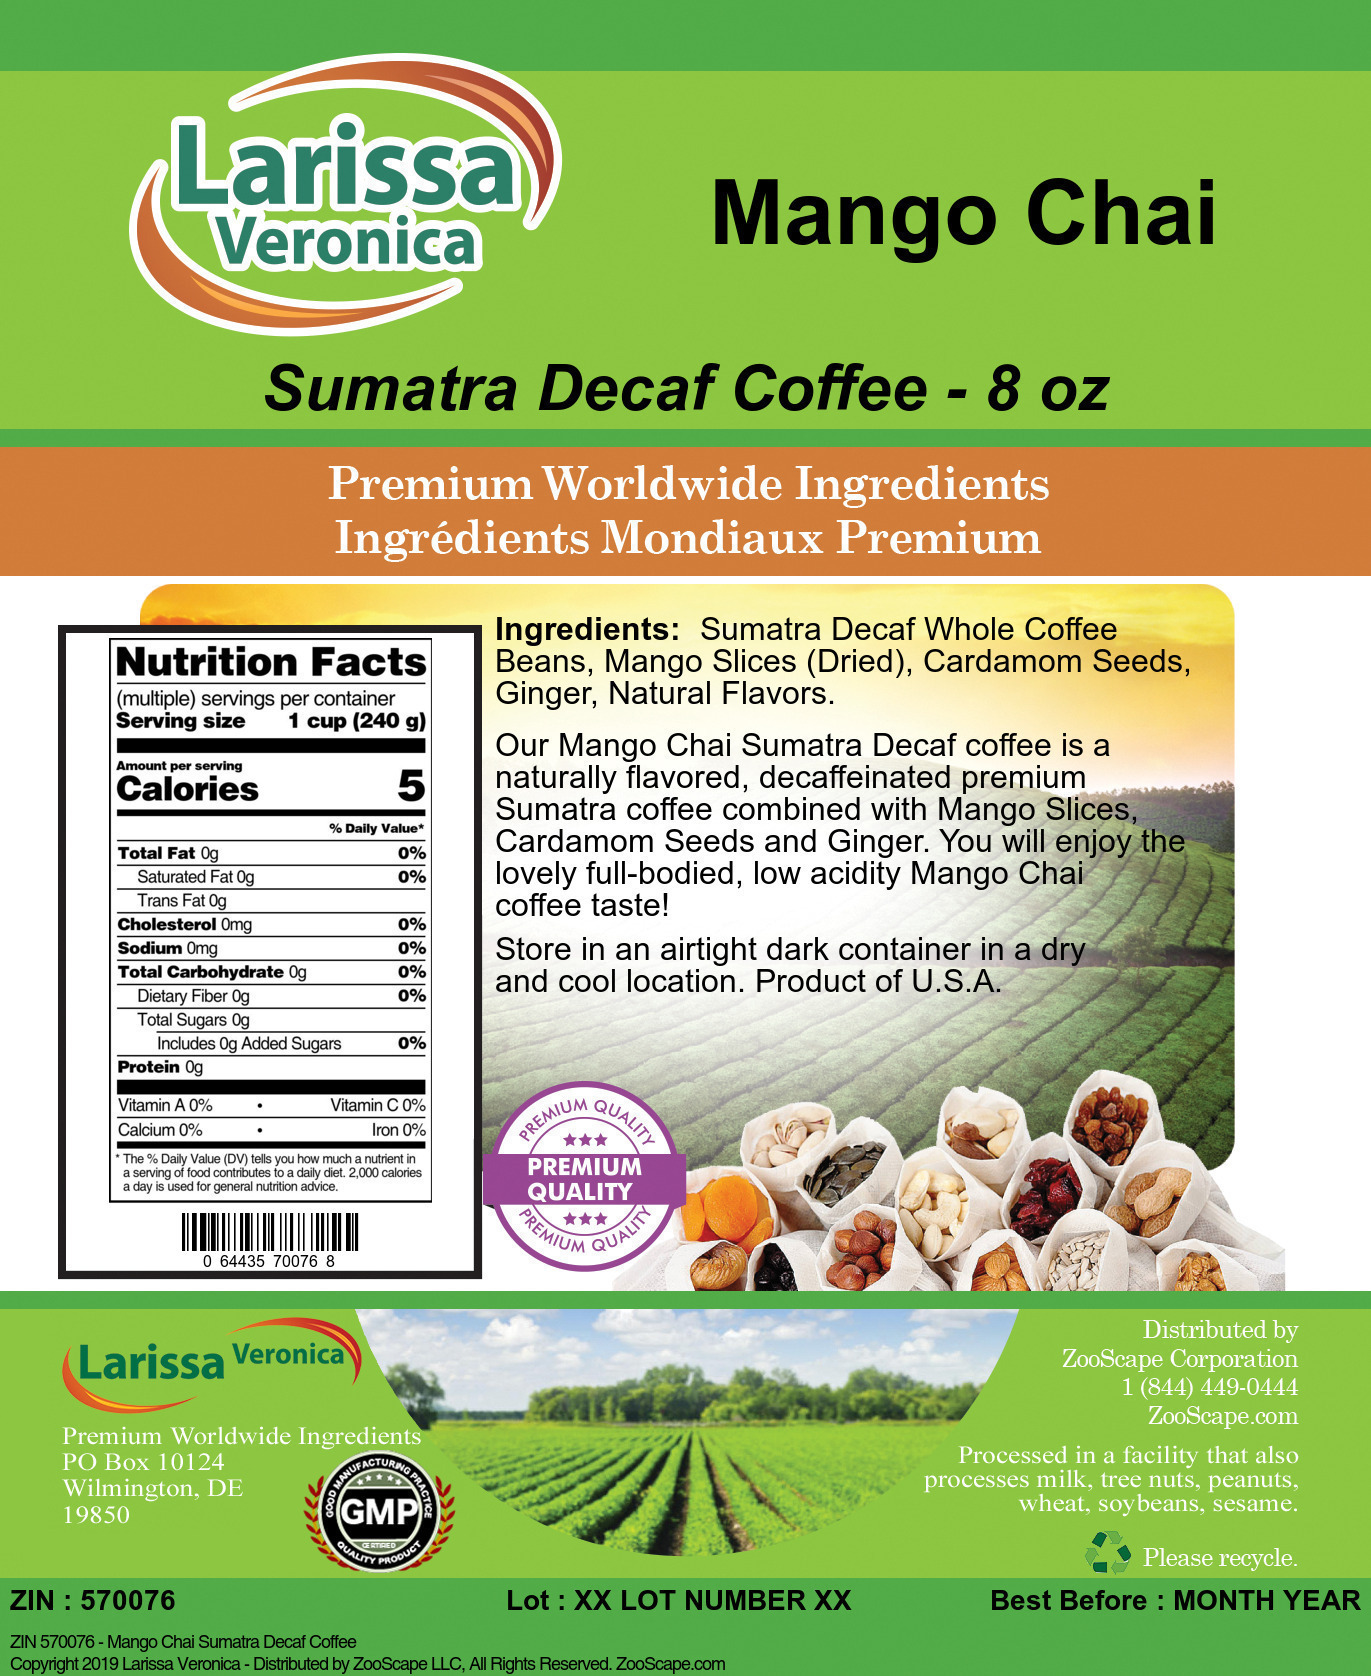 Mango Chai Sumatra Decaf Coffee - Label